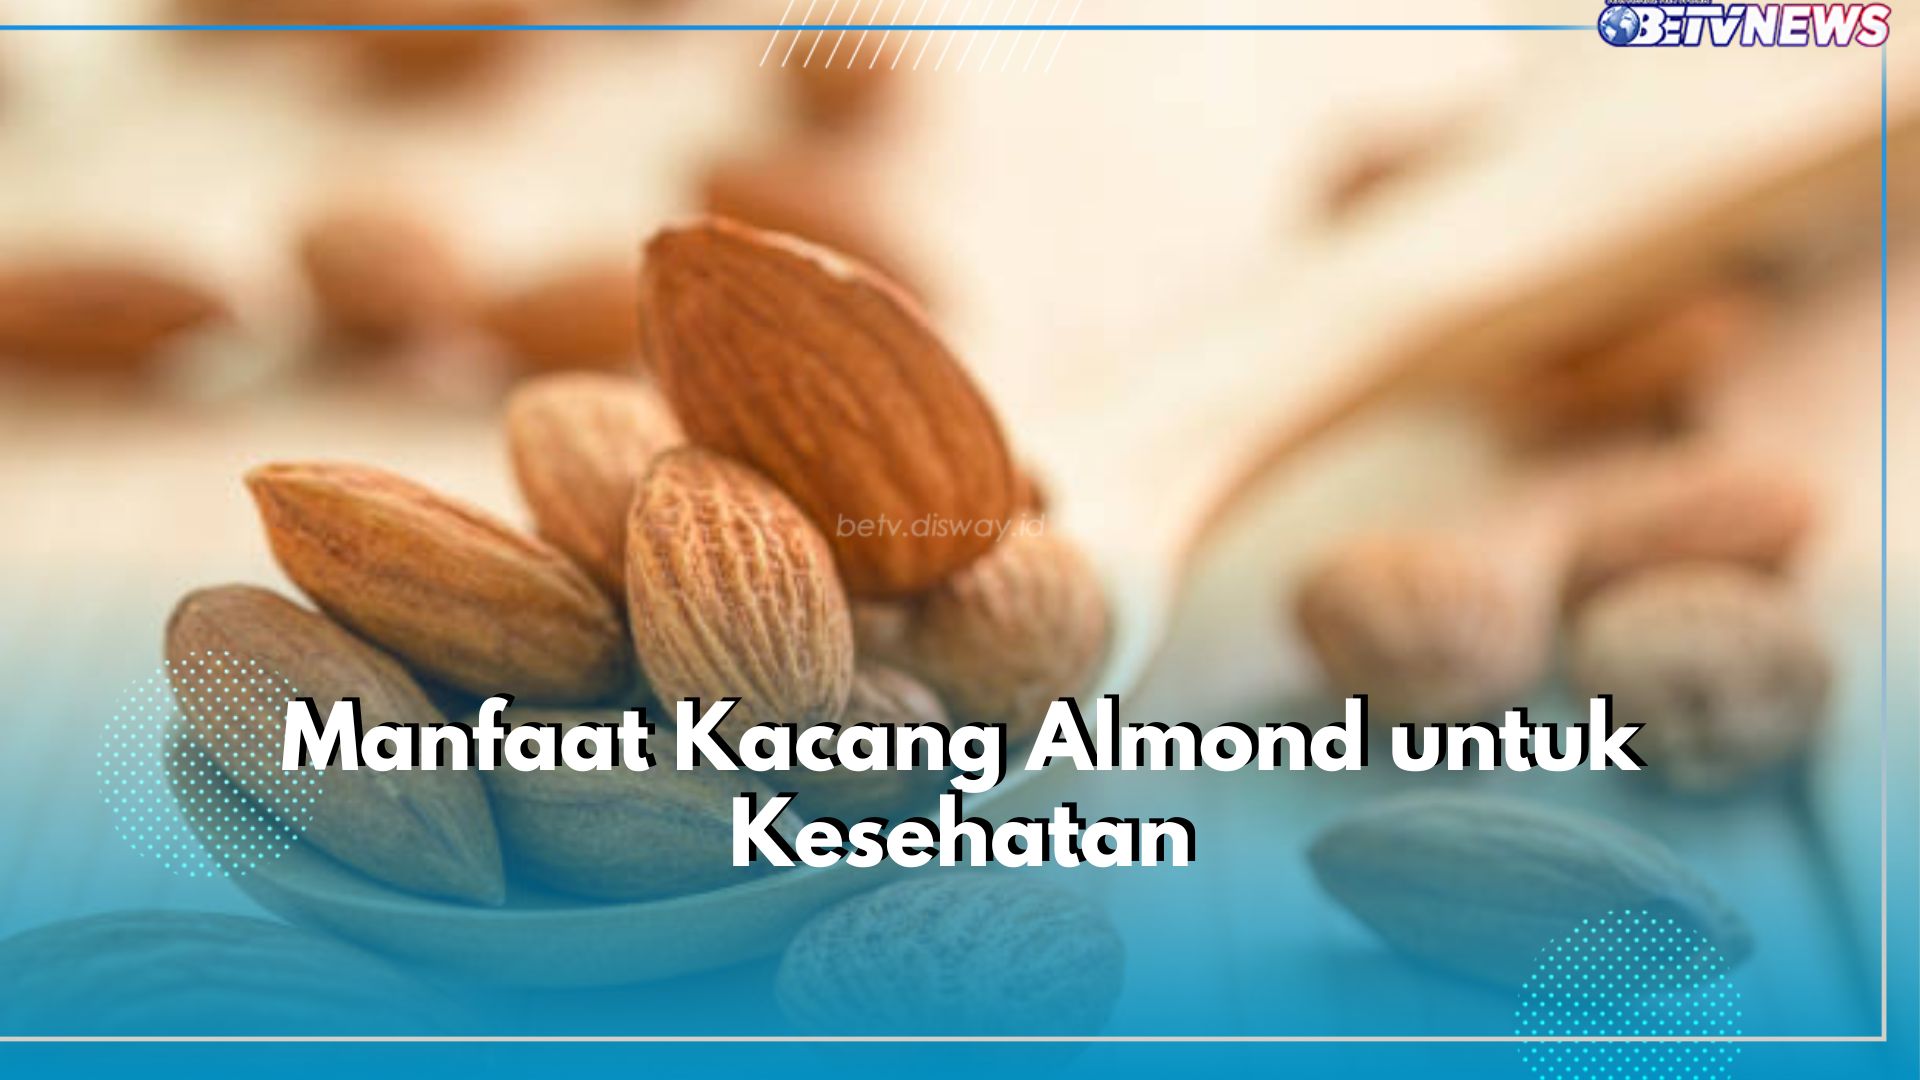 7 Manfaat Kacang Almond untuk Kesehatan, Ampuh Kontrol Gula Darah hingga Turunkan Berat Badan